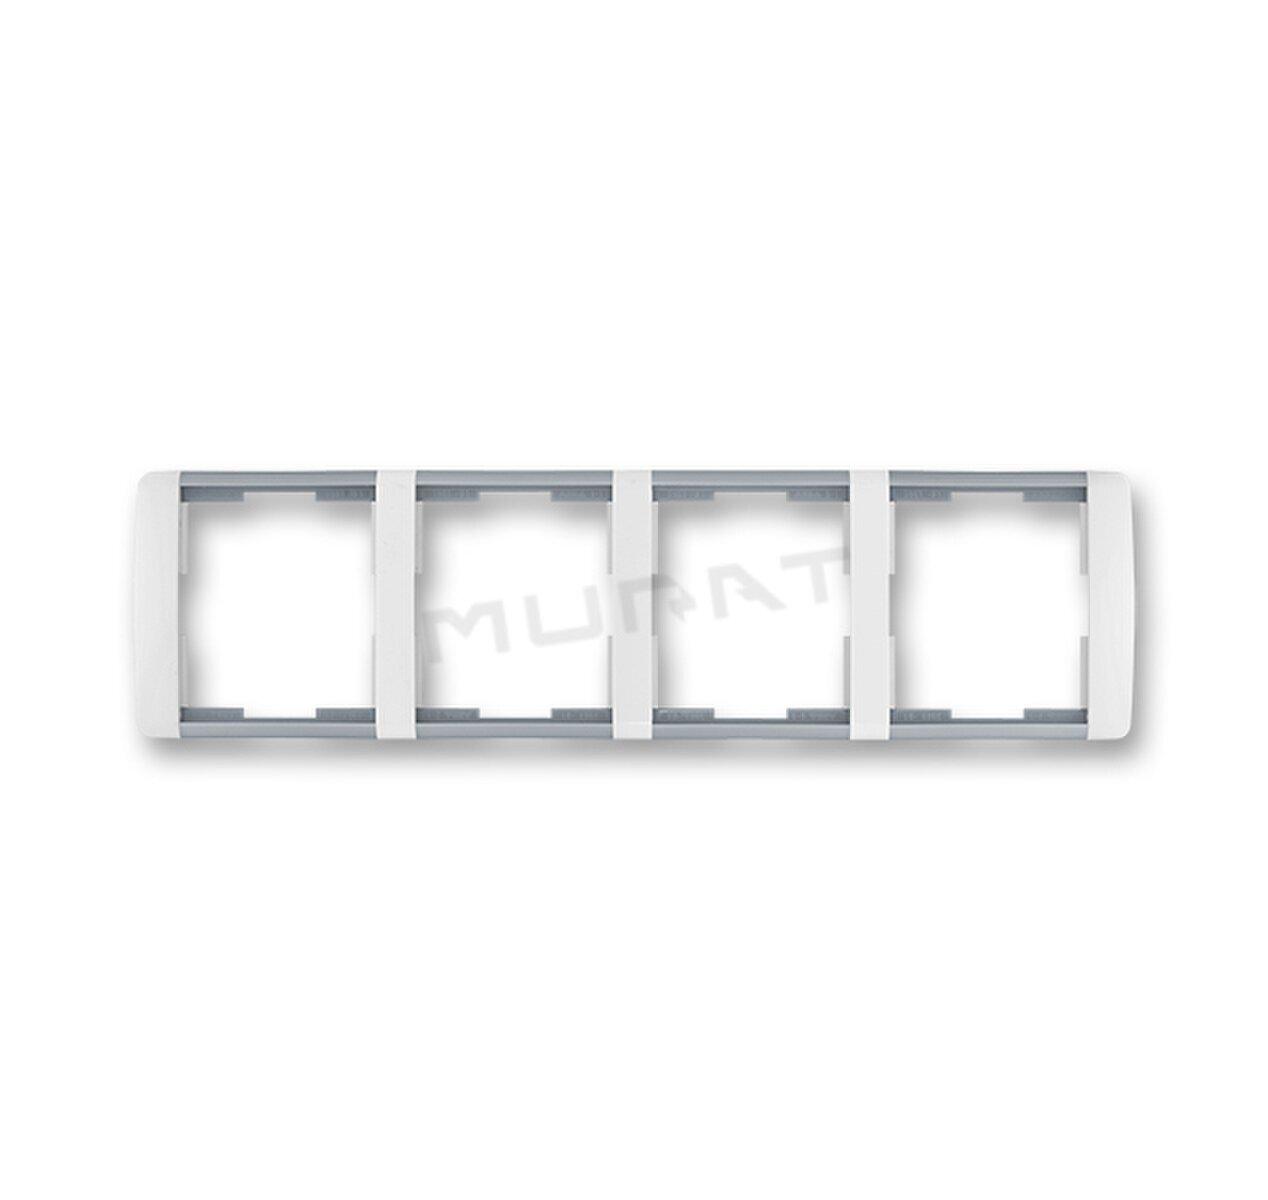 Element-rámček-4 vodorovný 3901E-A00140 04 biela/ľadová šedá